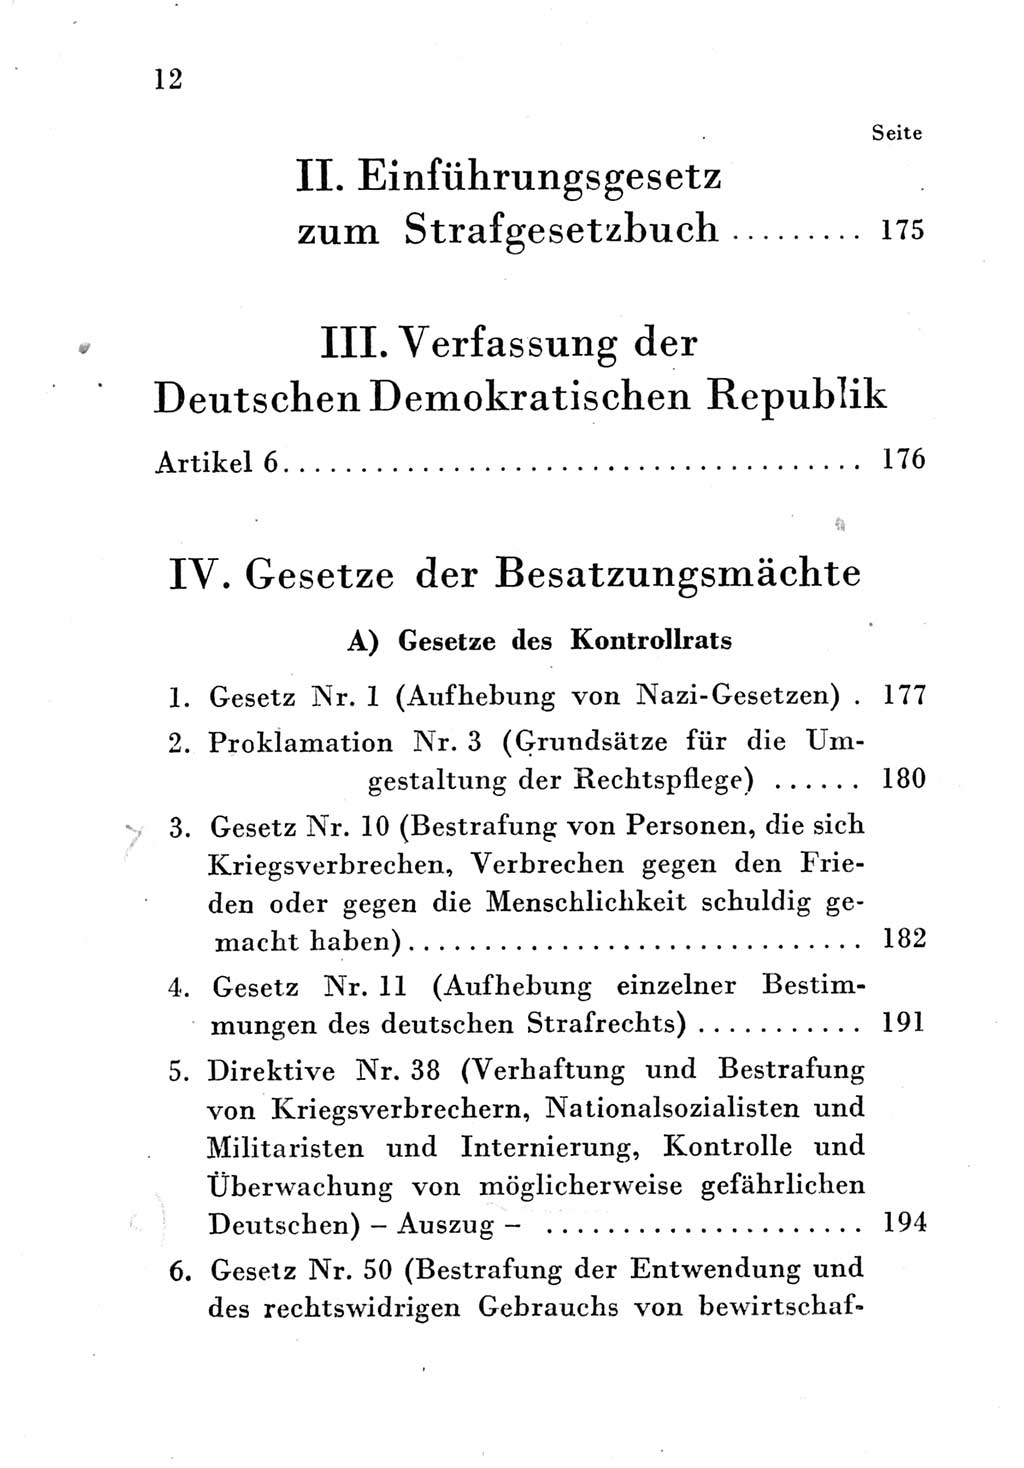 Strafgesetzbuch (StGB) und andere Strafgesetze [Deutsche Demokratische Republik (DDR)] 1951, Seite 12 (StGB Strafges. DDR 1951, S. 12)